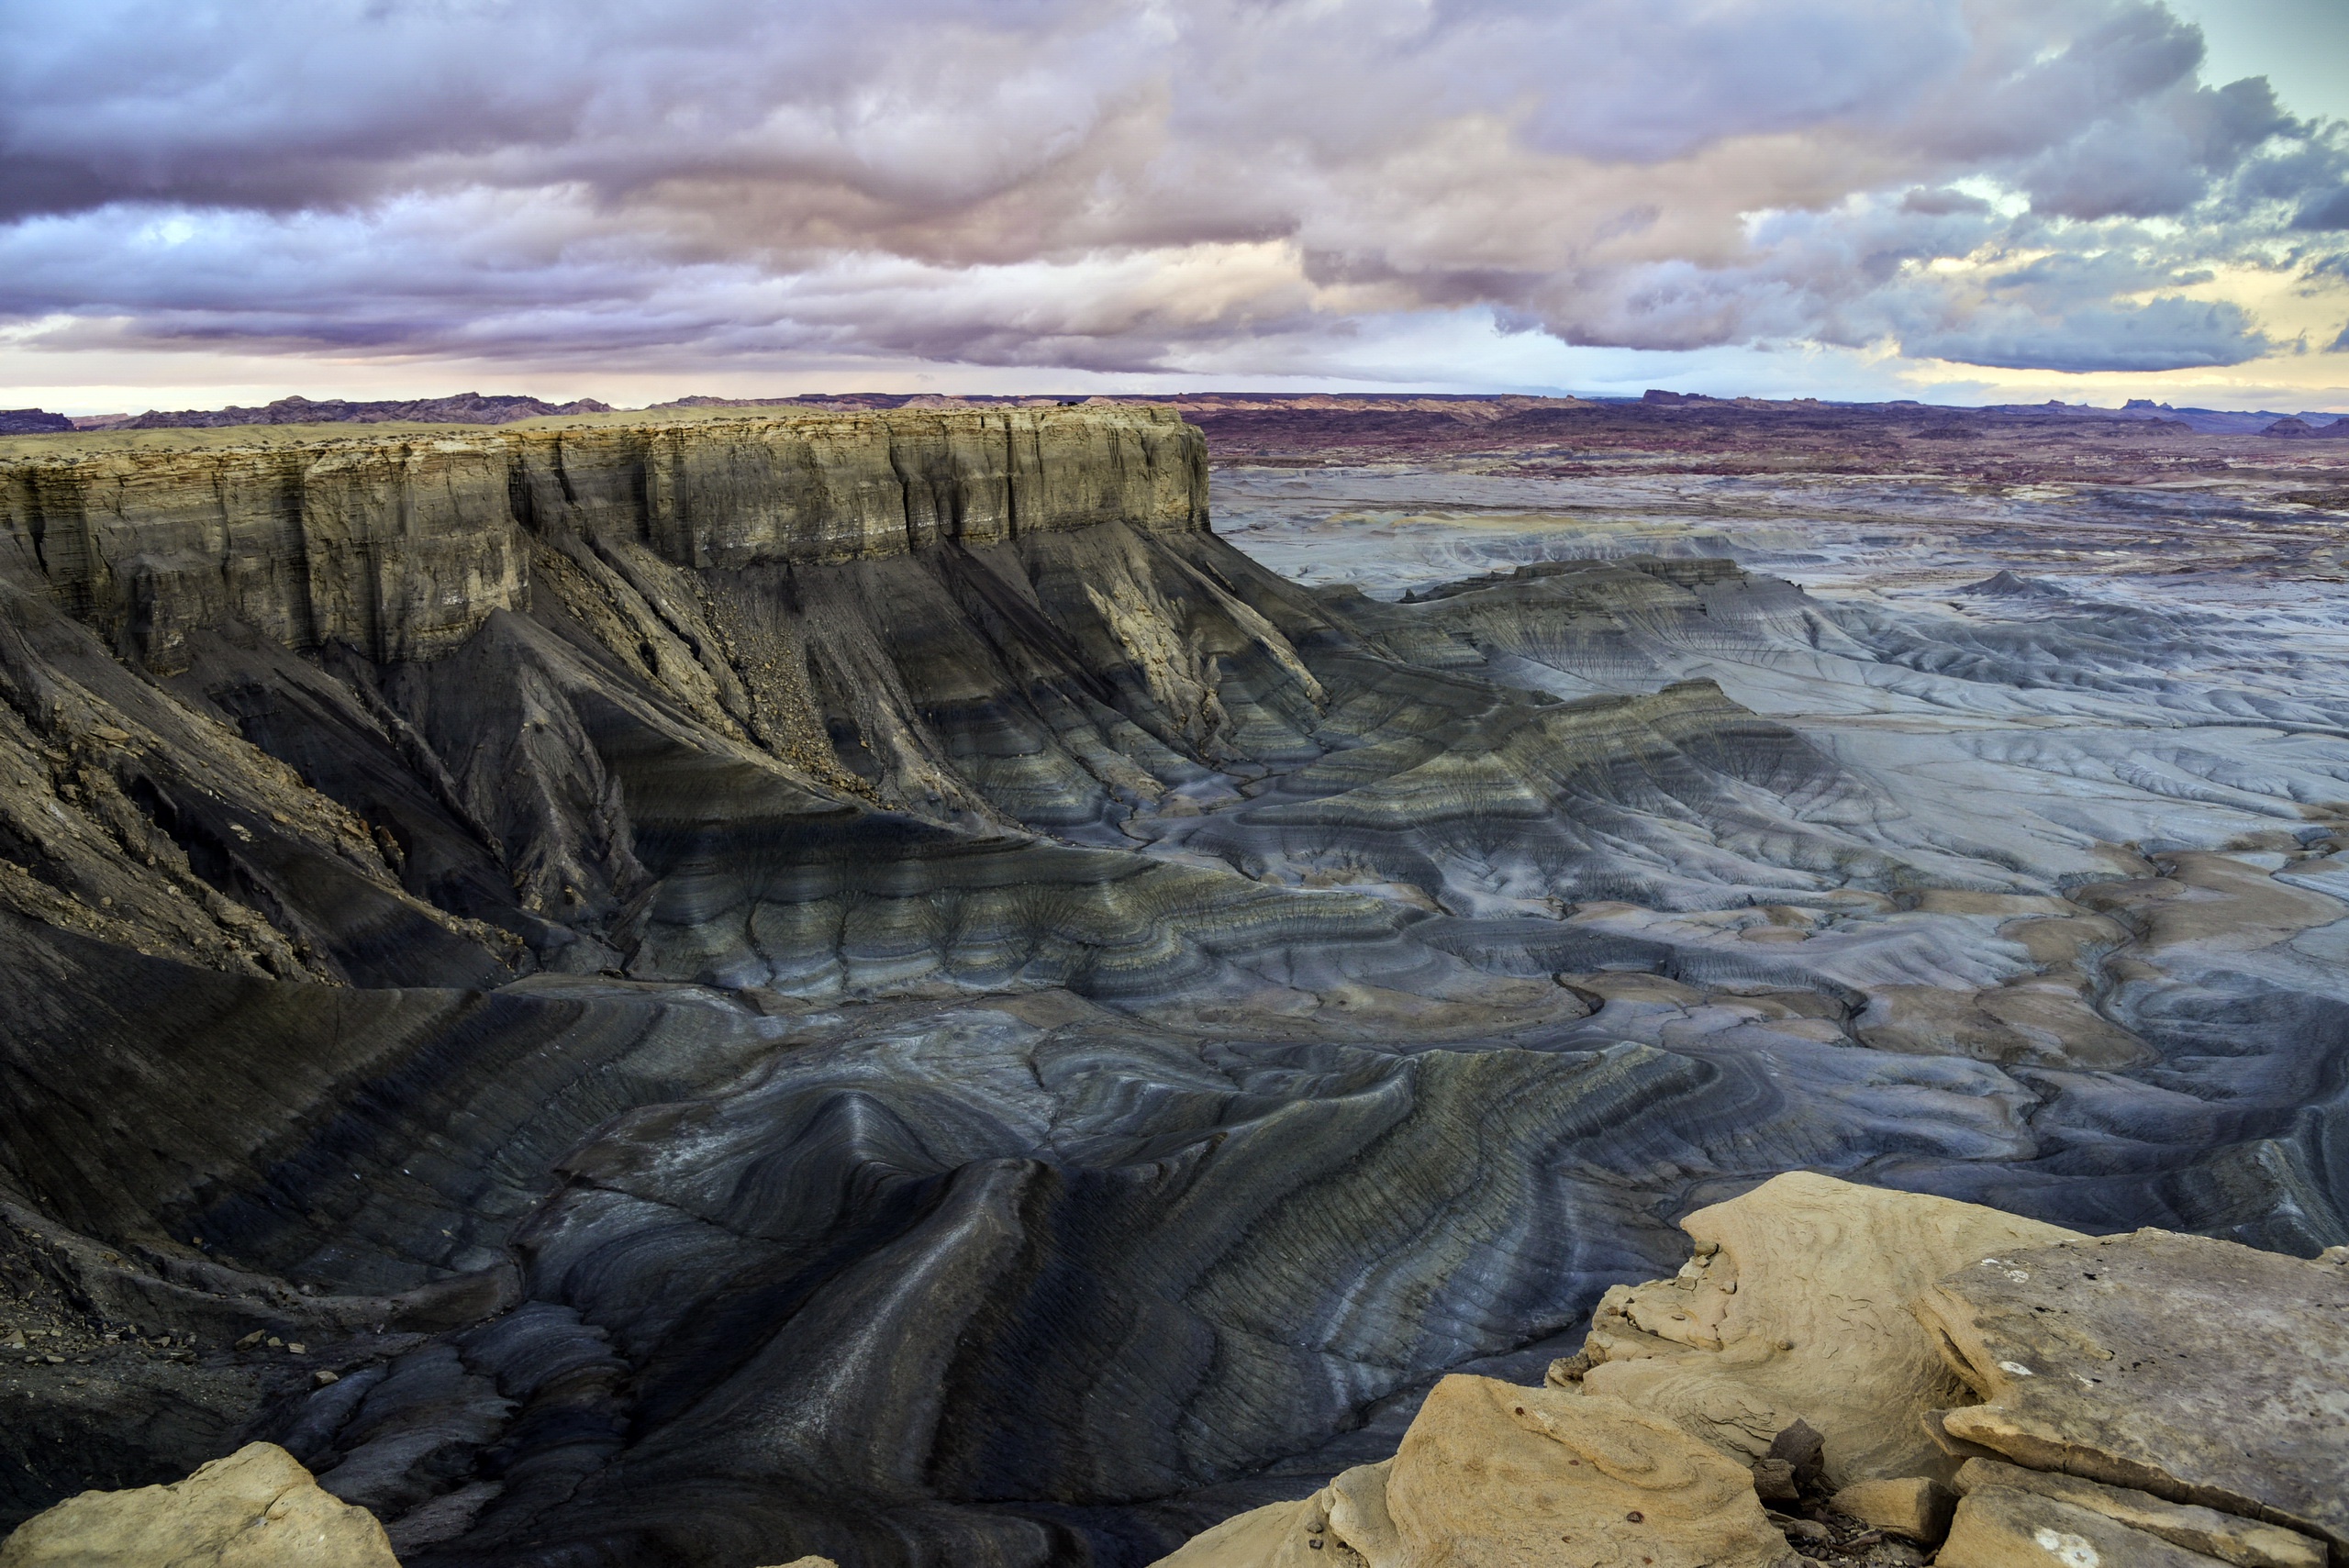 General 2560x1709 Utah landscape USA nature rock formation